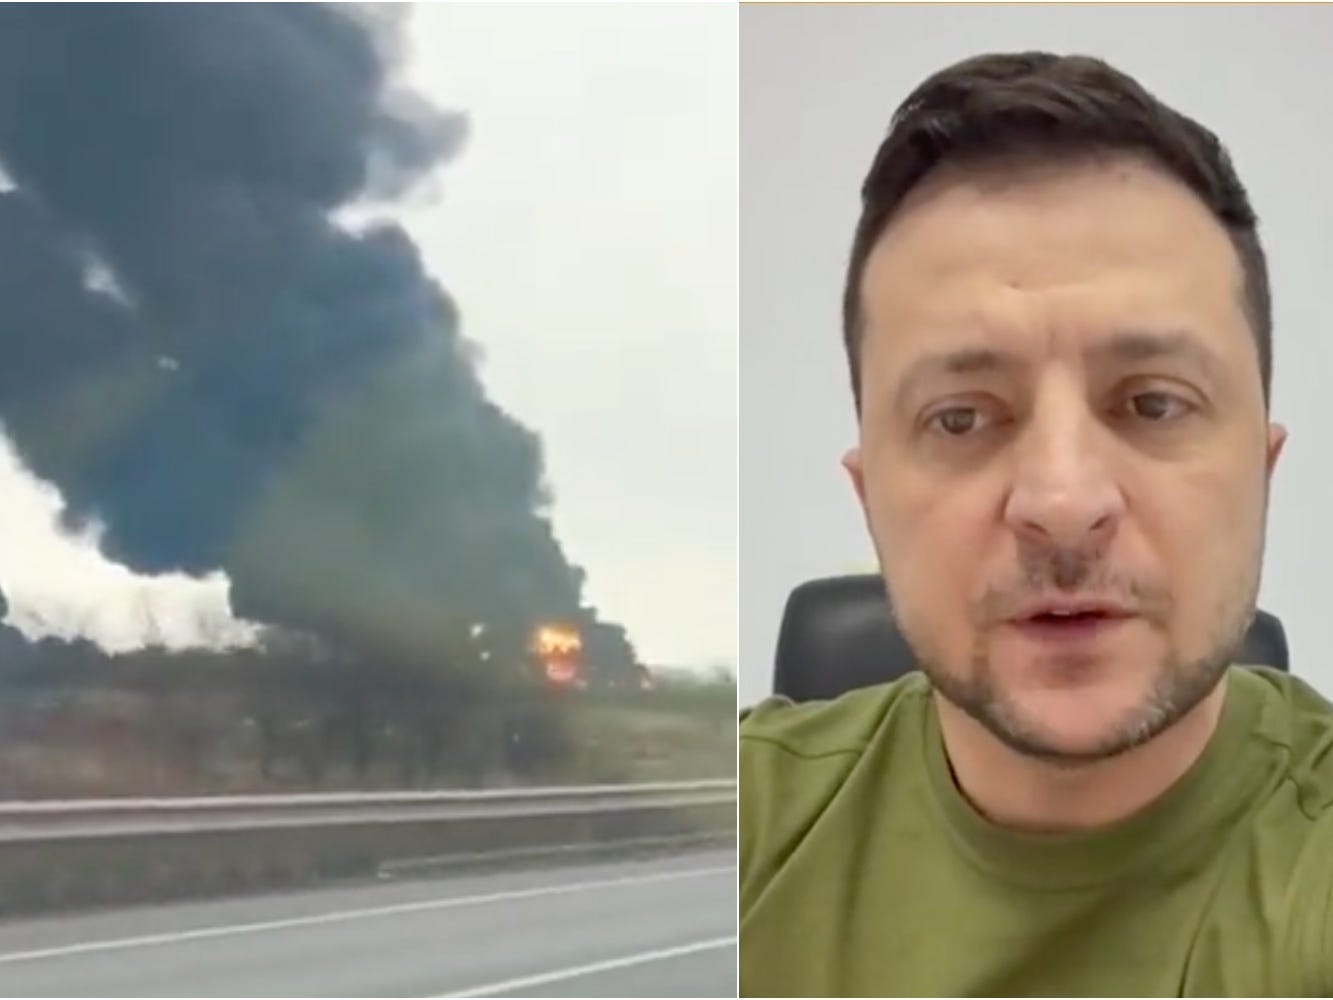 Smoke rises from Vinnytsia airport, left, and Volodymyr Zelensky speaks, right.